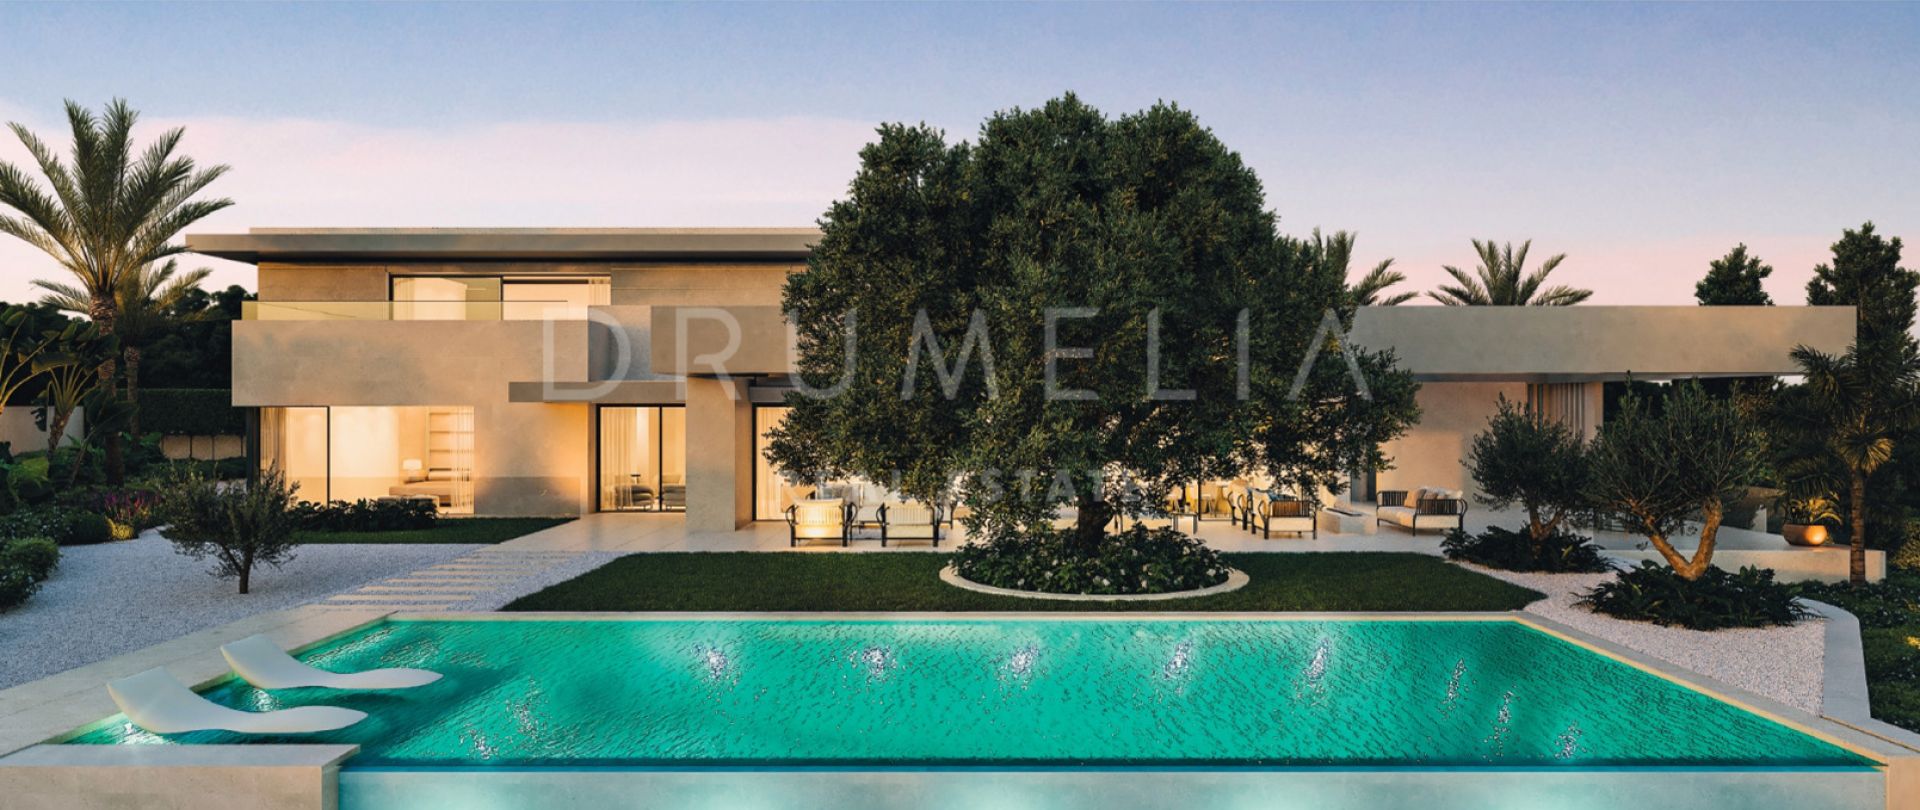 Brandneue Villa im modernen Stil in Sierra Blanca, der Goldenen Meile von Marbella, zu verkaufen